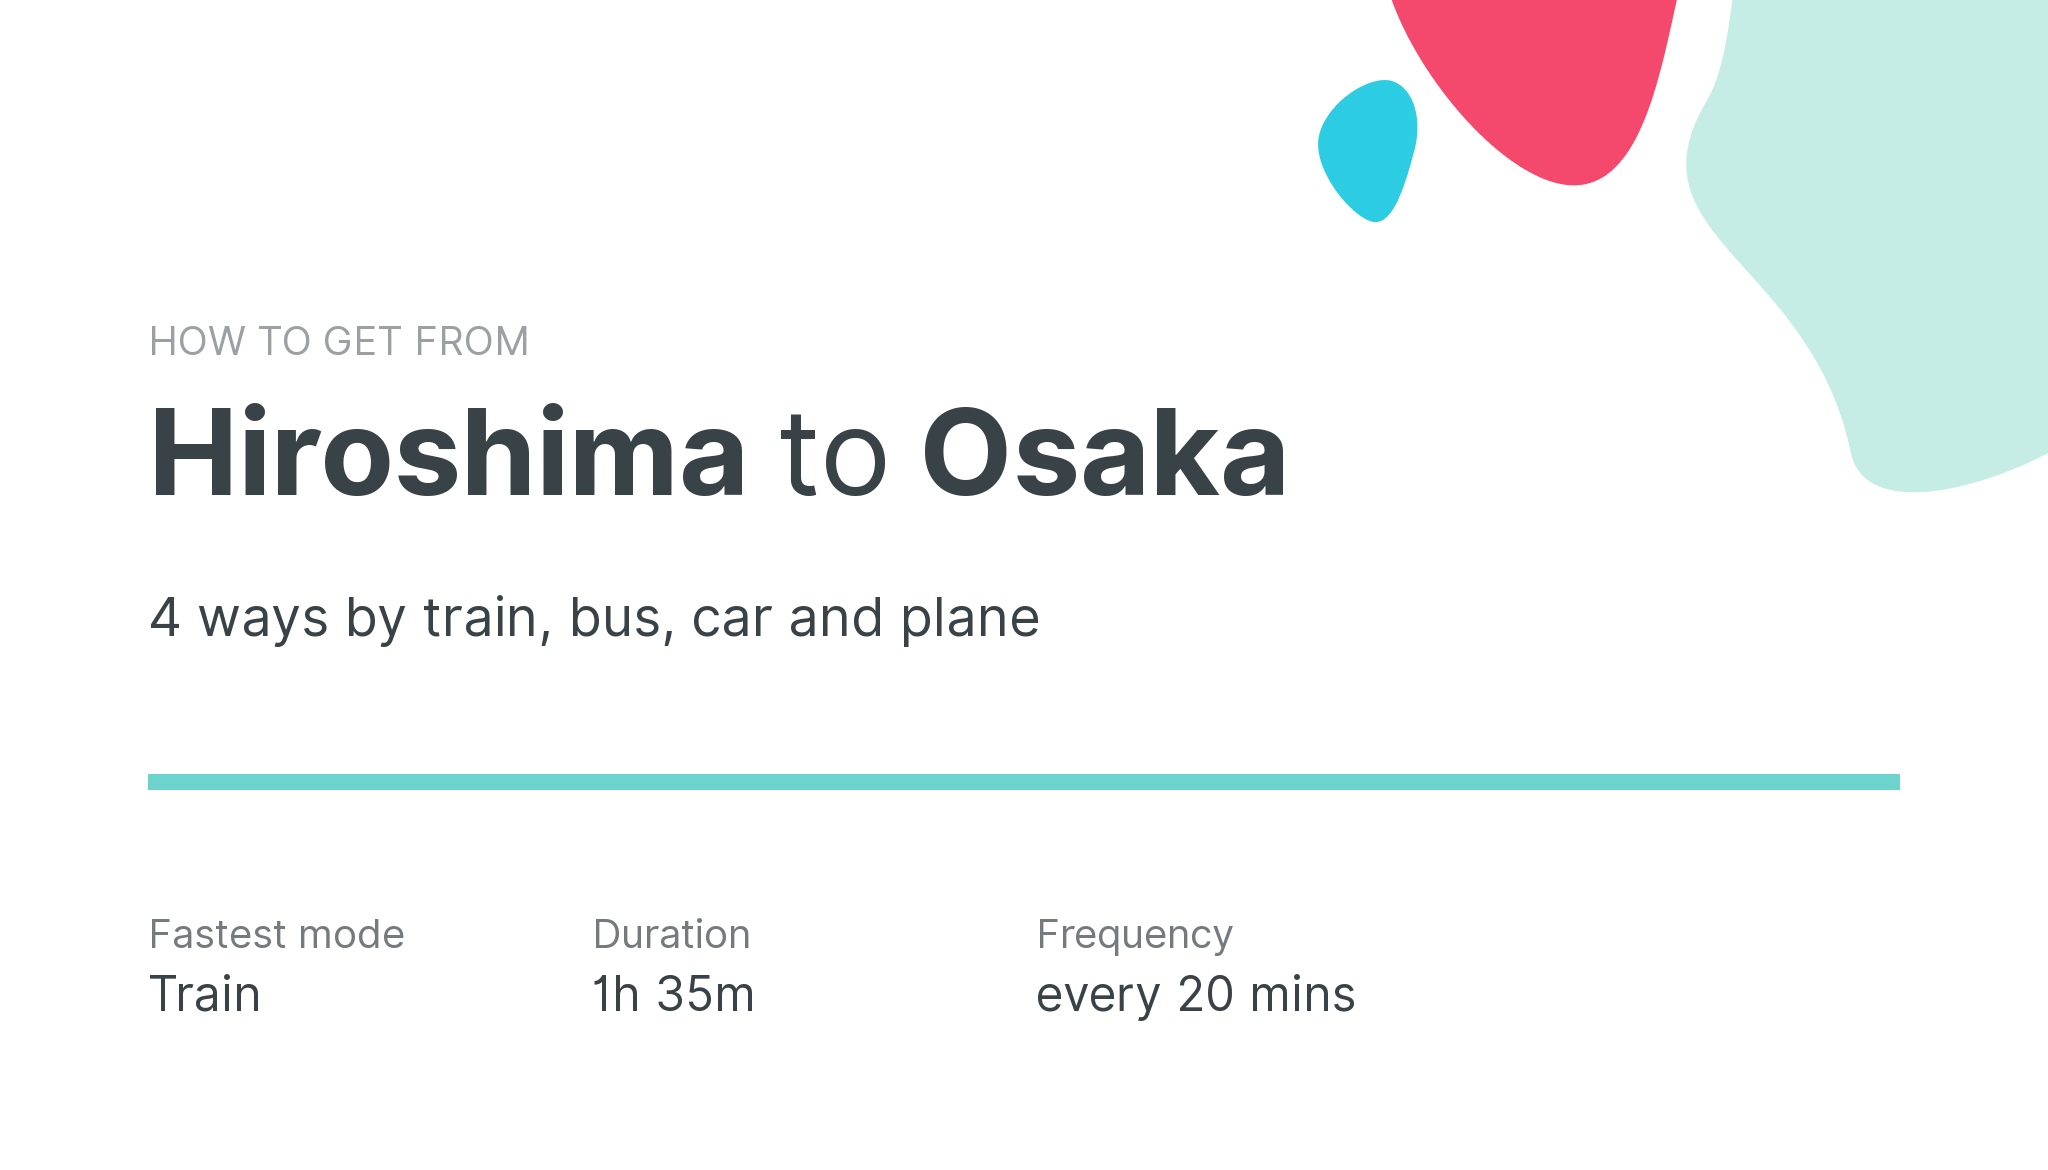 How do I get from Hiroshima to Osaka